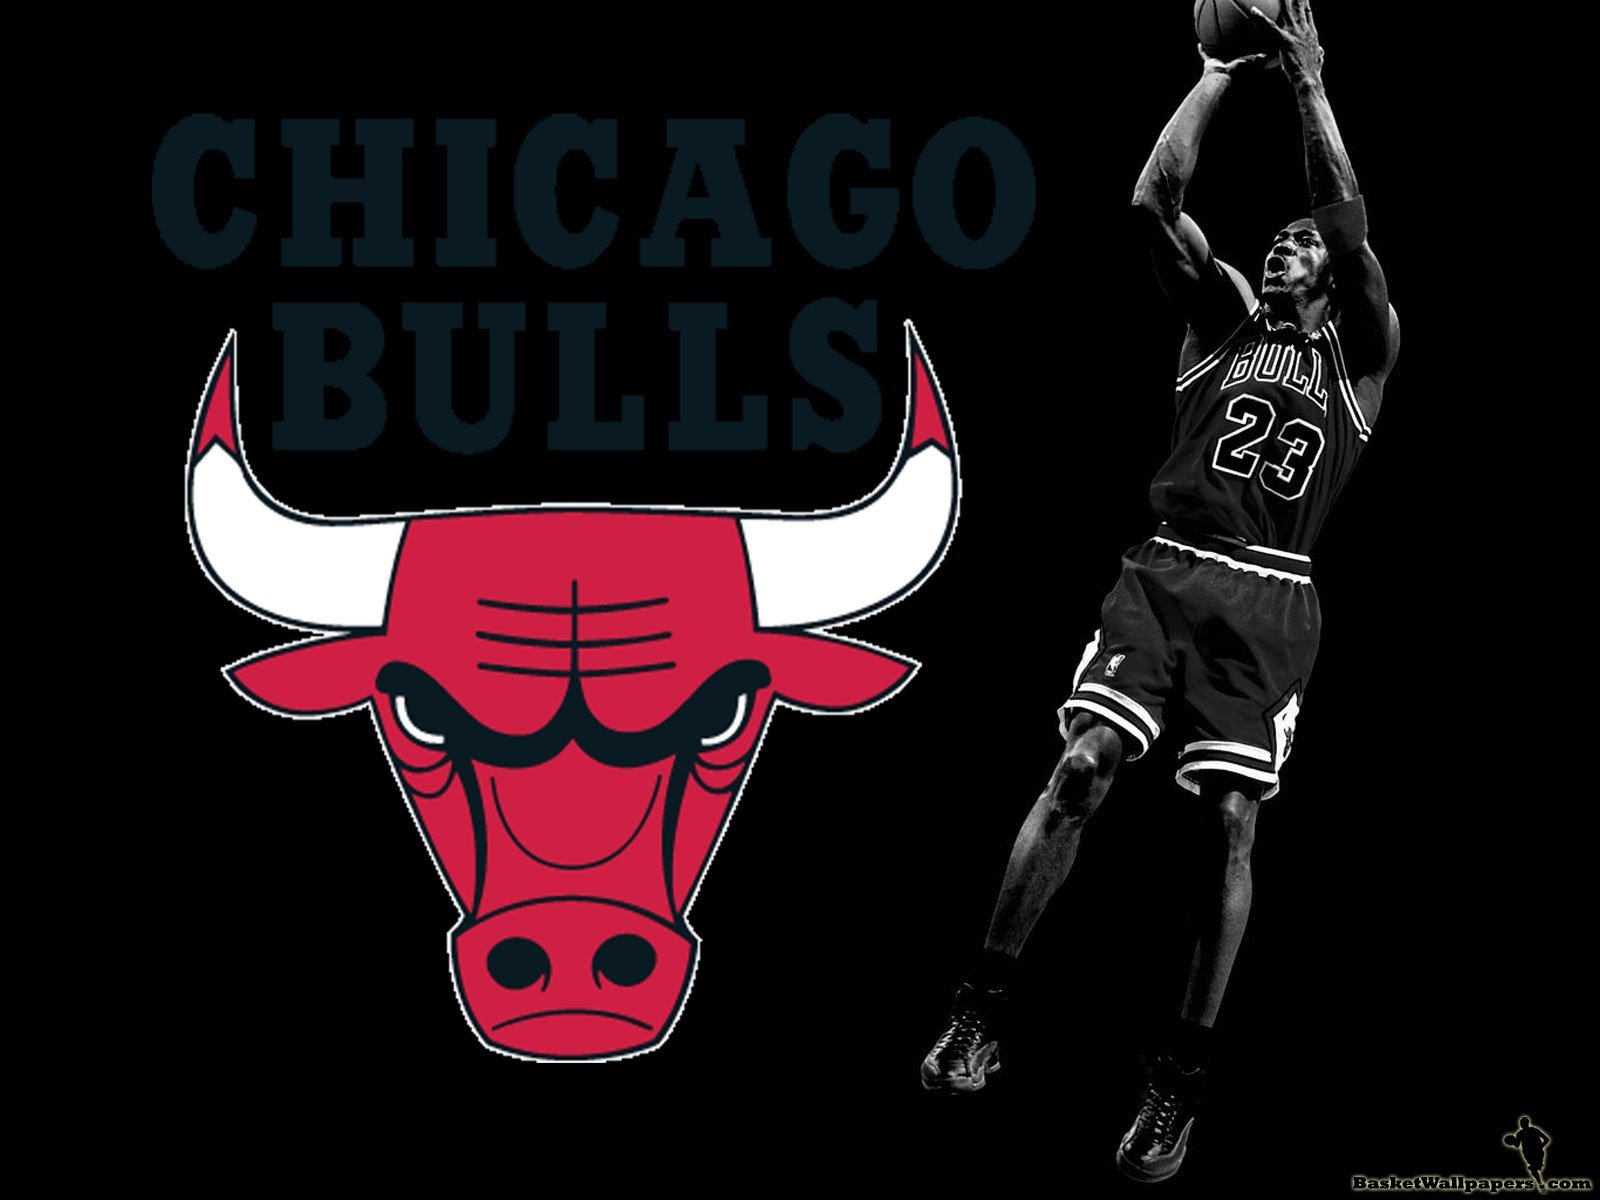 Chicago Bulls wallpaper For Android ImageBankbiz